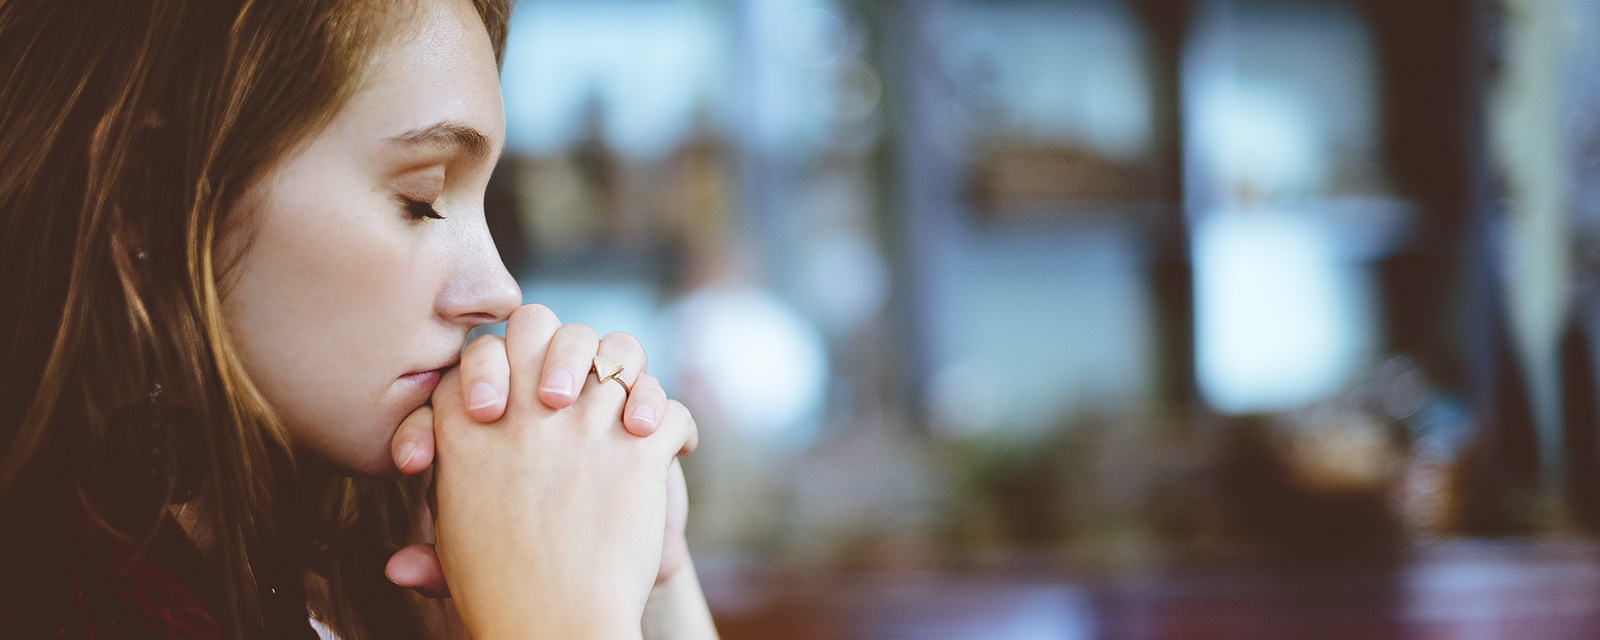 Eine junge Frau betet